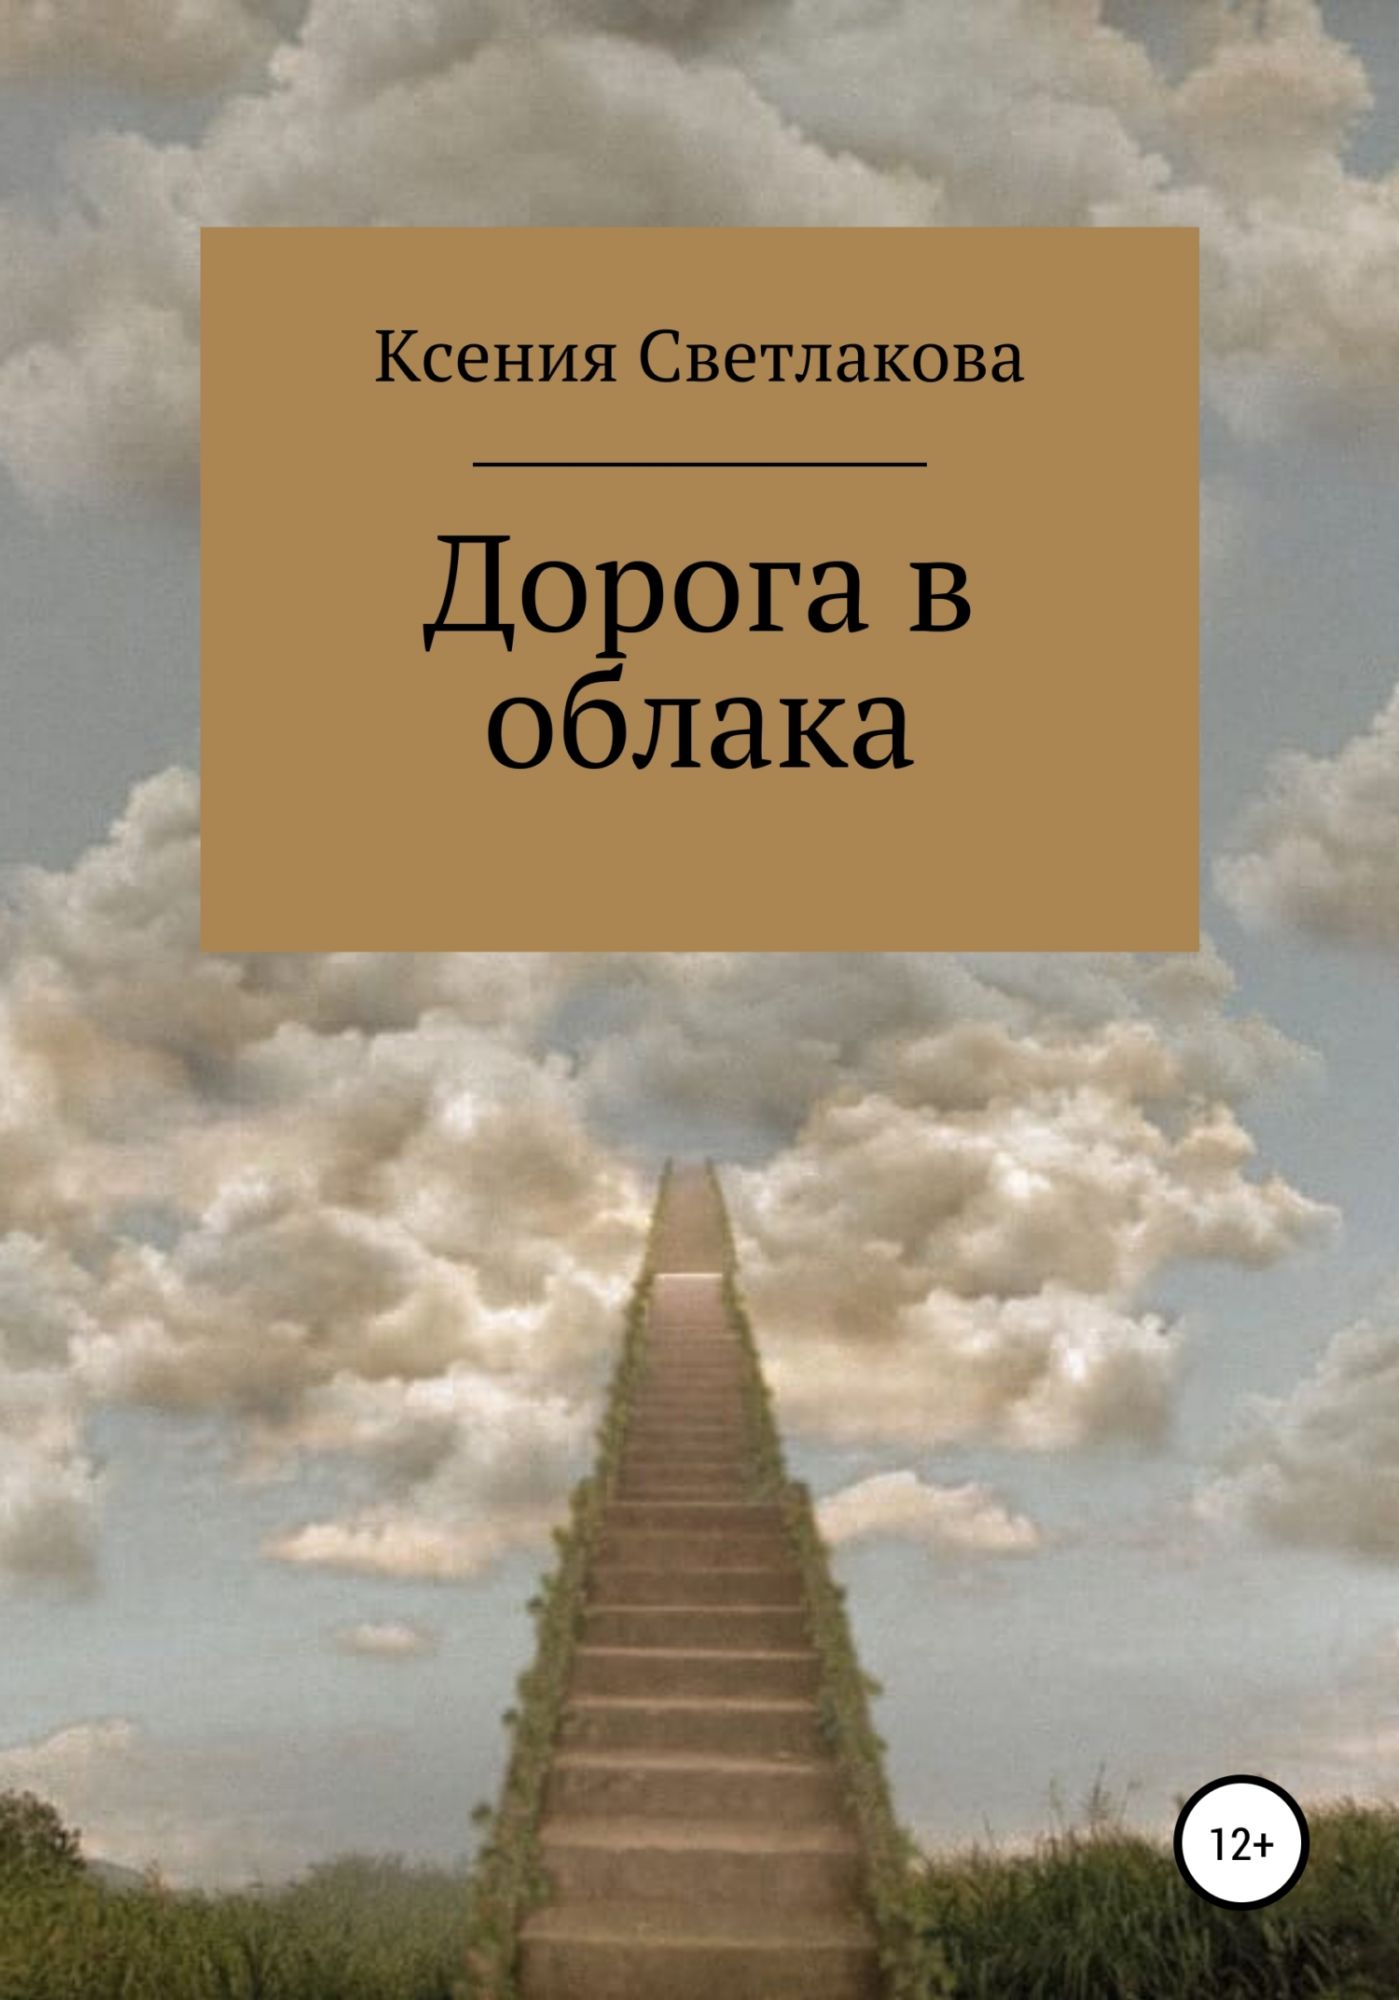 Облако читать 97. Книга дорога в облака. Дорога из книг. Книга про облака. Облака над дорогой книга.